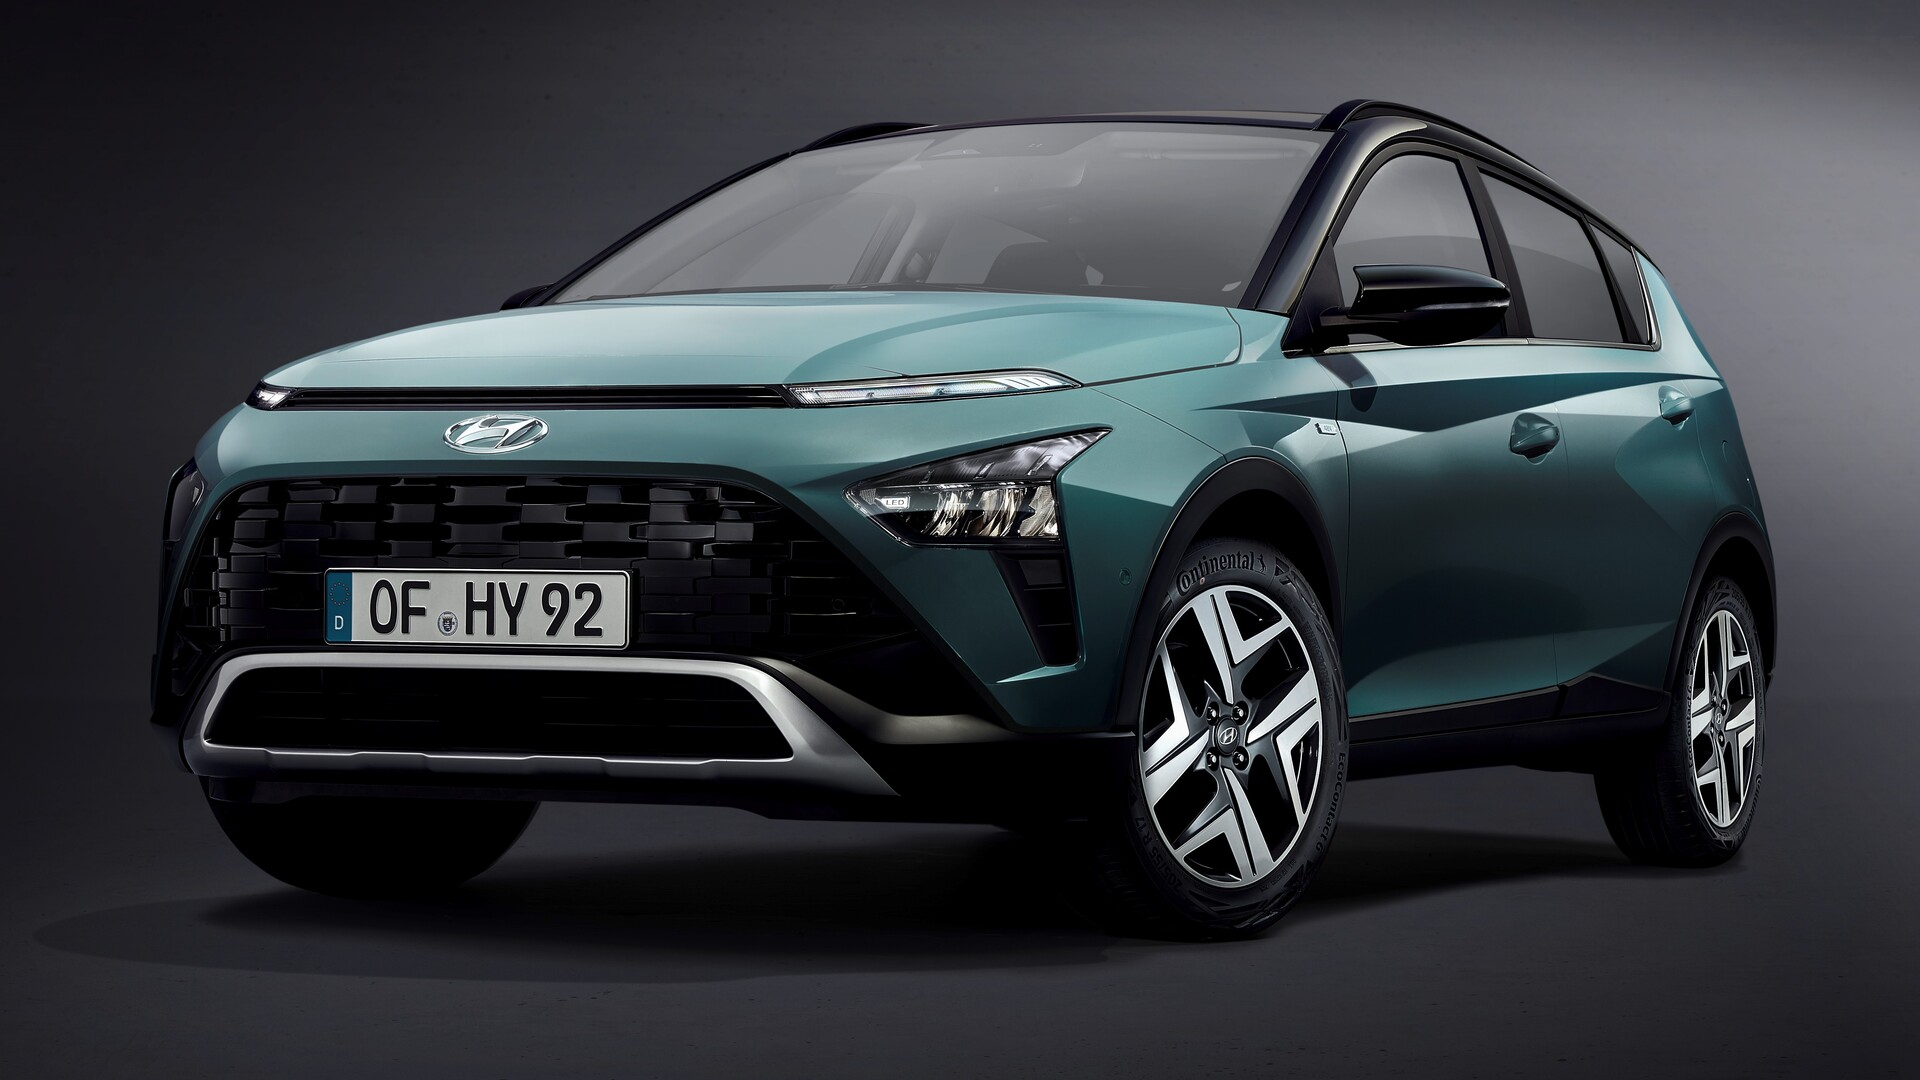 Hyundai'nin Yeni Yıldızı Bayon Tanıtıldı